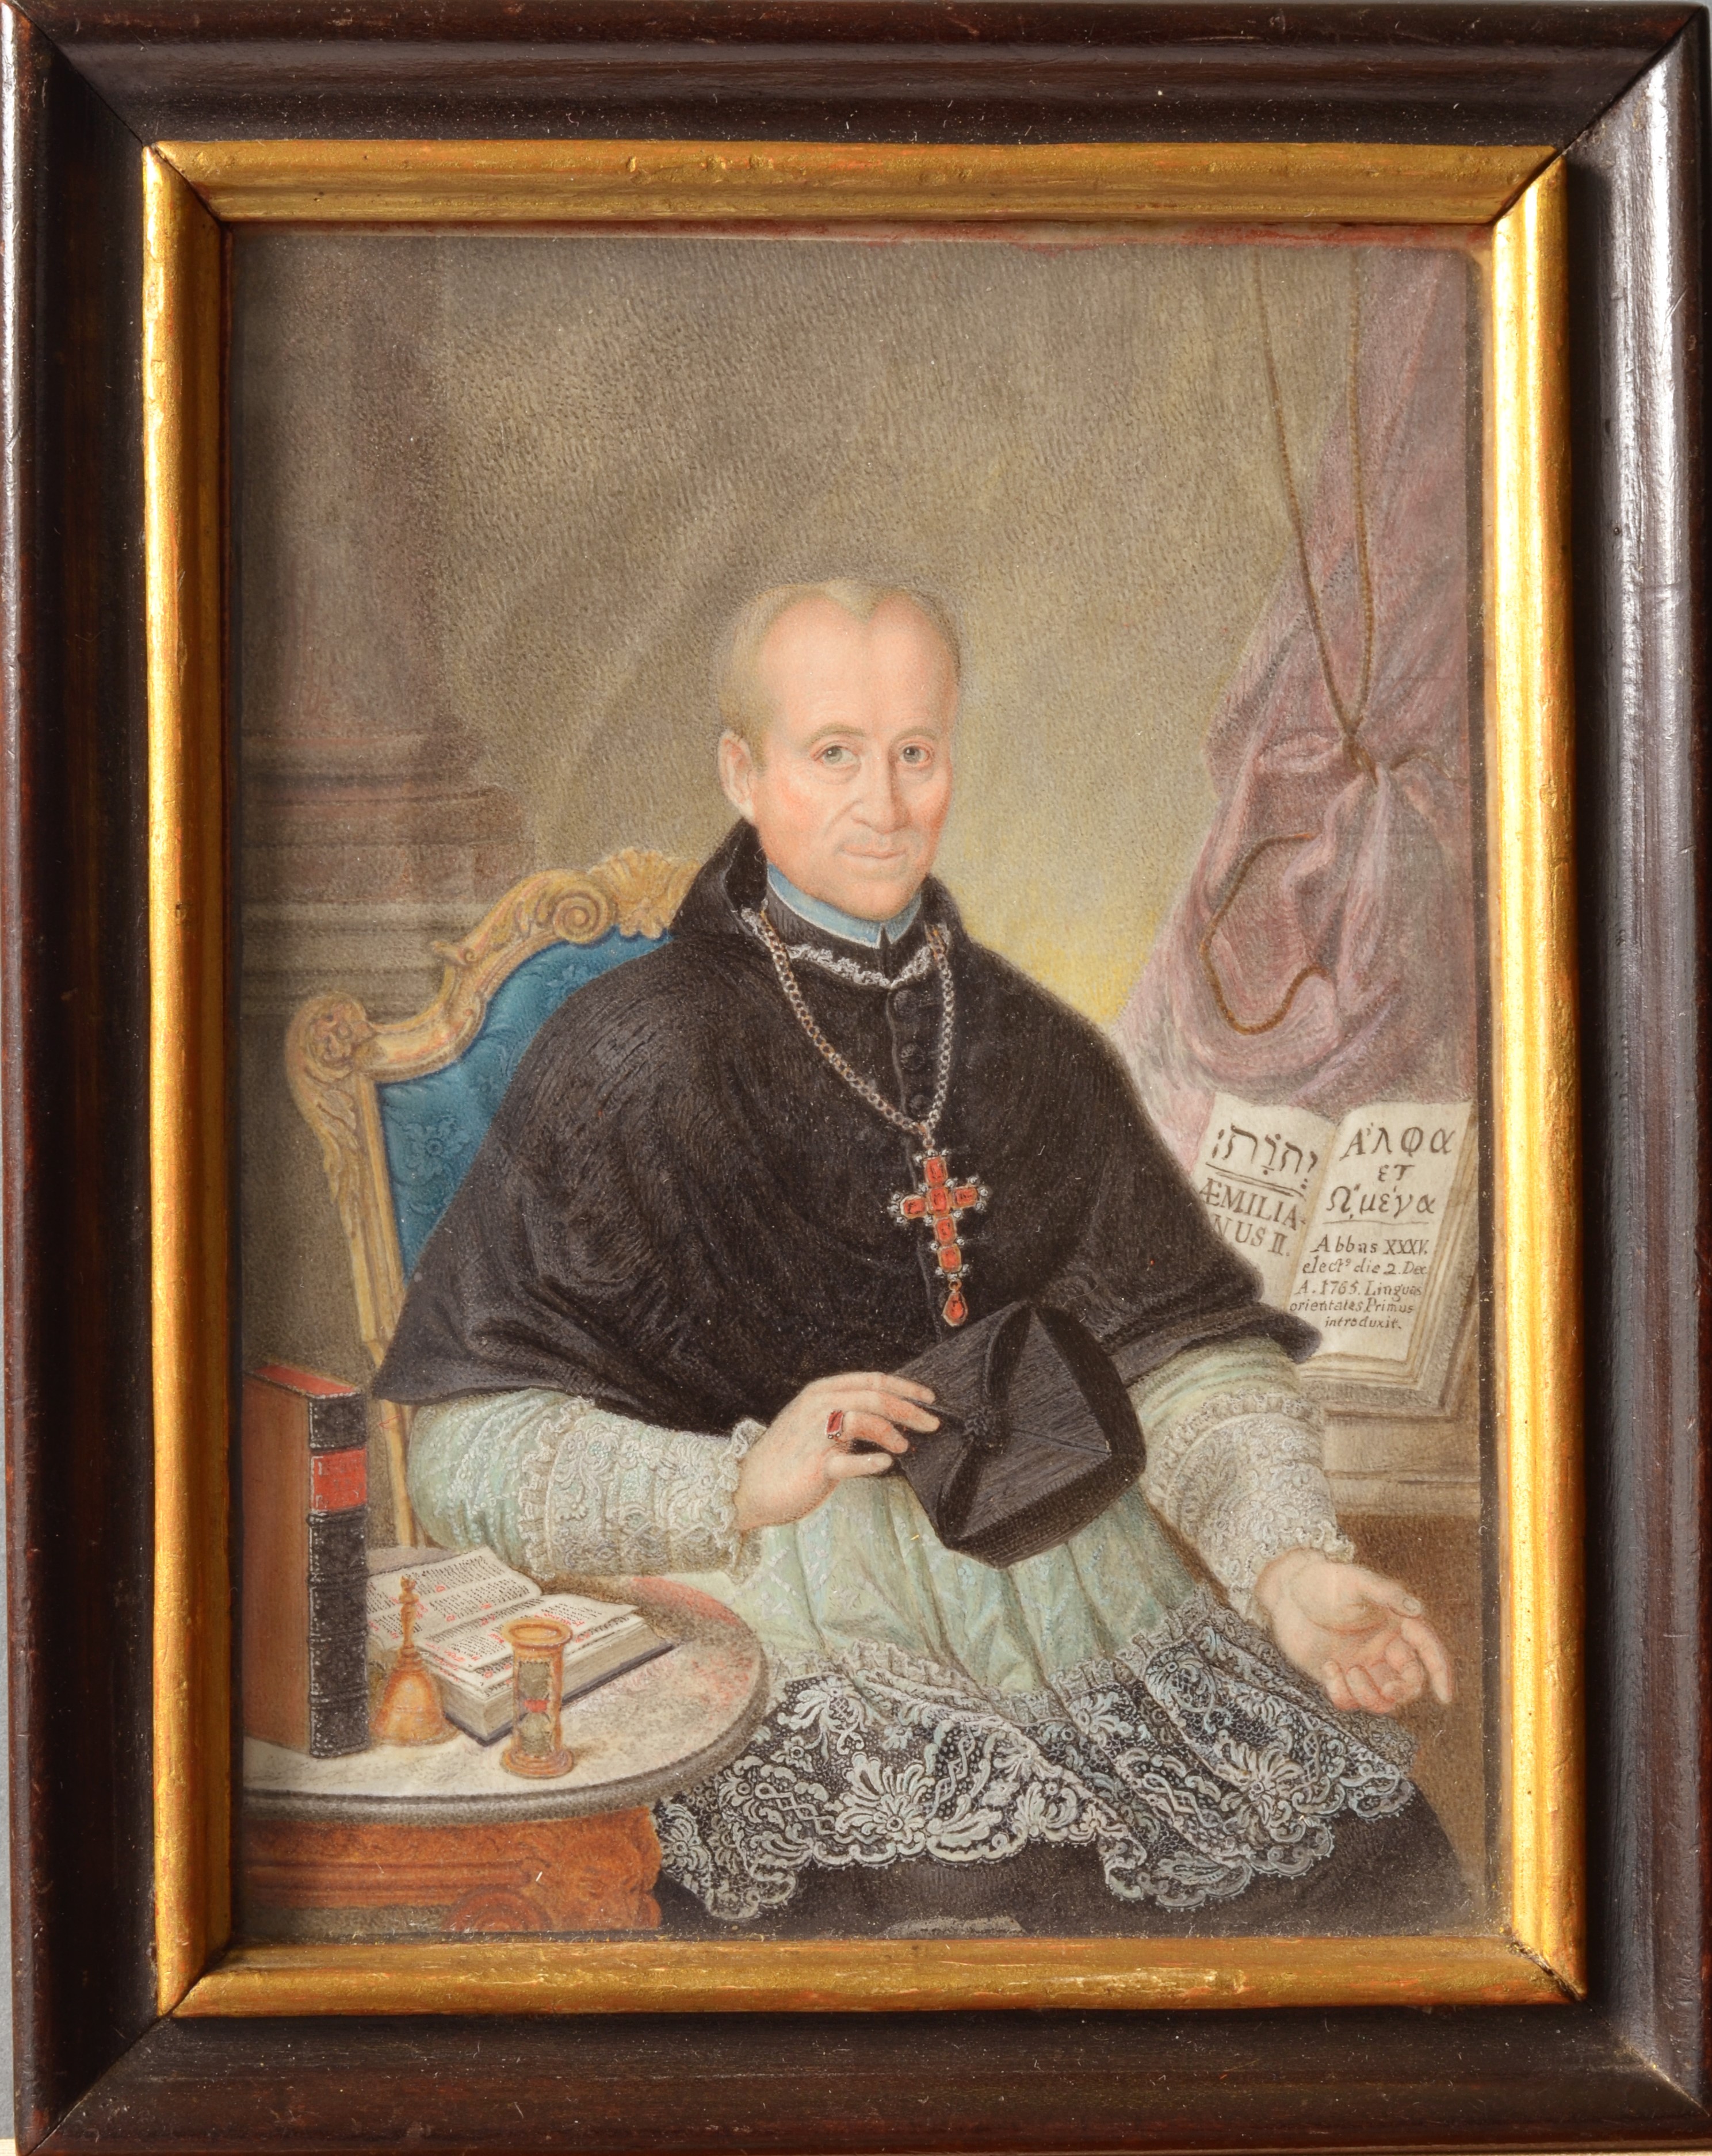 Kloster Irsee im Glück: Porträt von Abt Ämilian Mock kehrt nach über zwei Jahrhunderten heim 